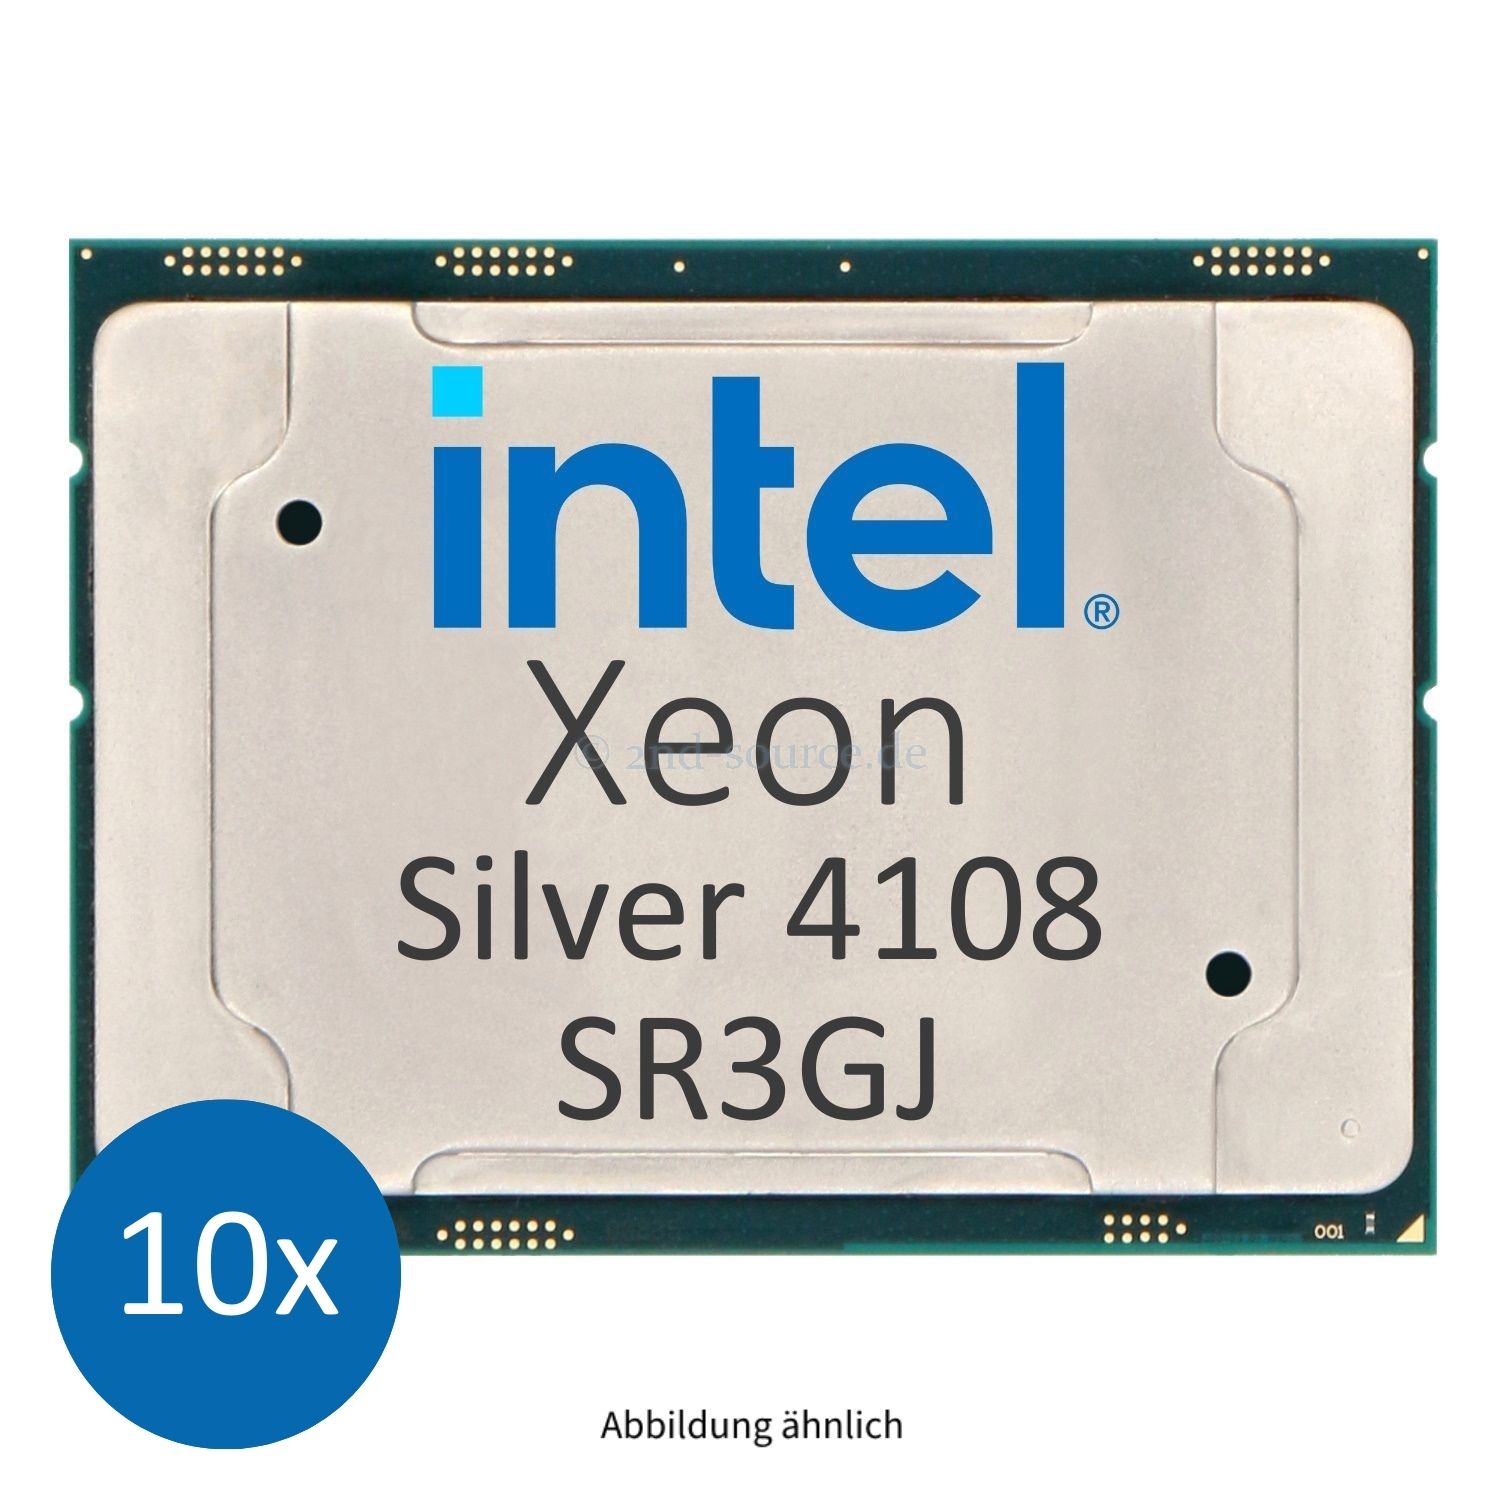 10x Intel Xeon Silver 4108 1.80GHz 11MB 8-Core CPU 85W SR3GJ CD8067303561500